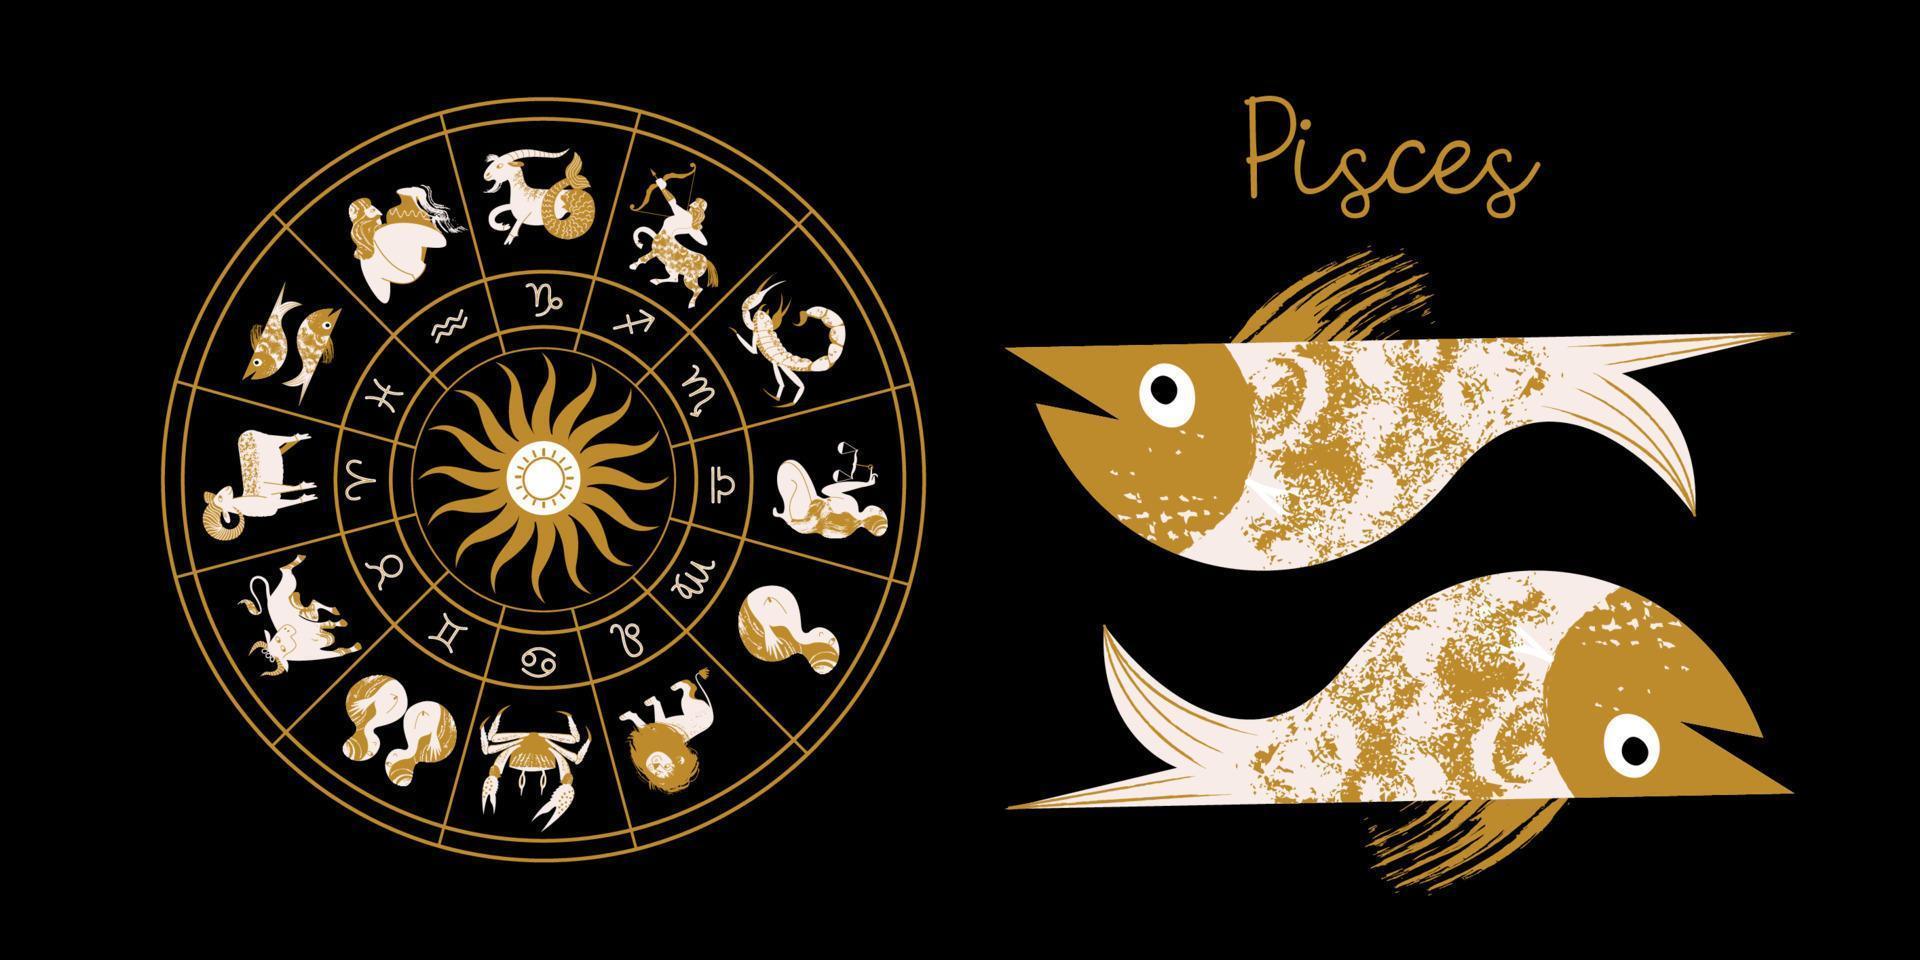 signo del zodíaco piscis. horóscopo y astrología. horóscopo completo en el círculo. Zodíaco de la rueda del horóscopo con el vector de doce signos.